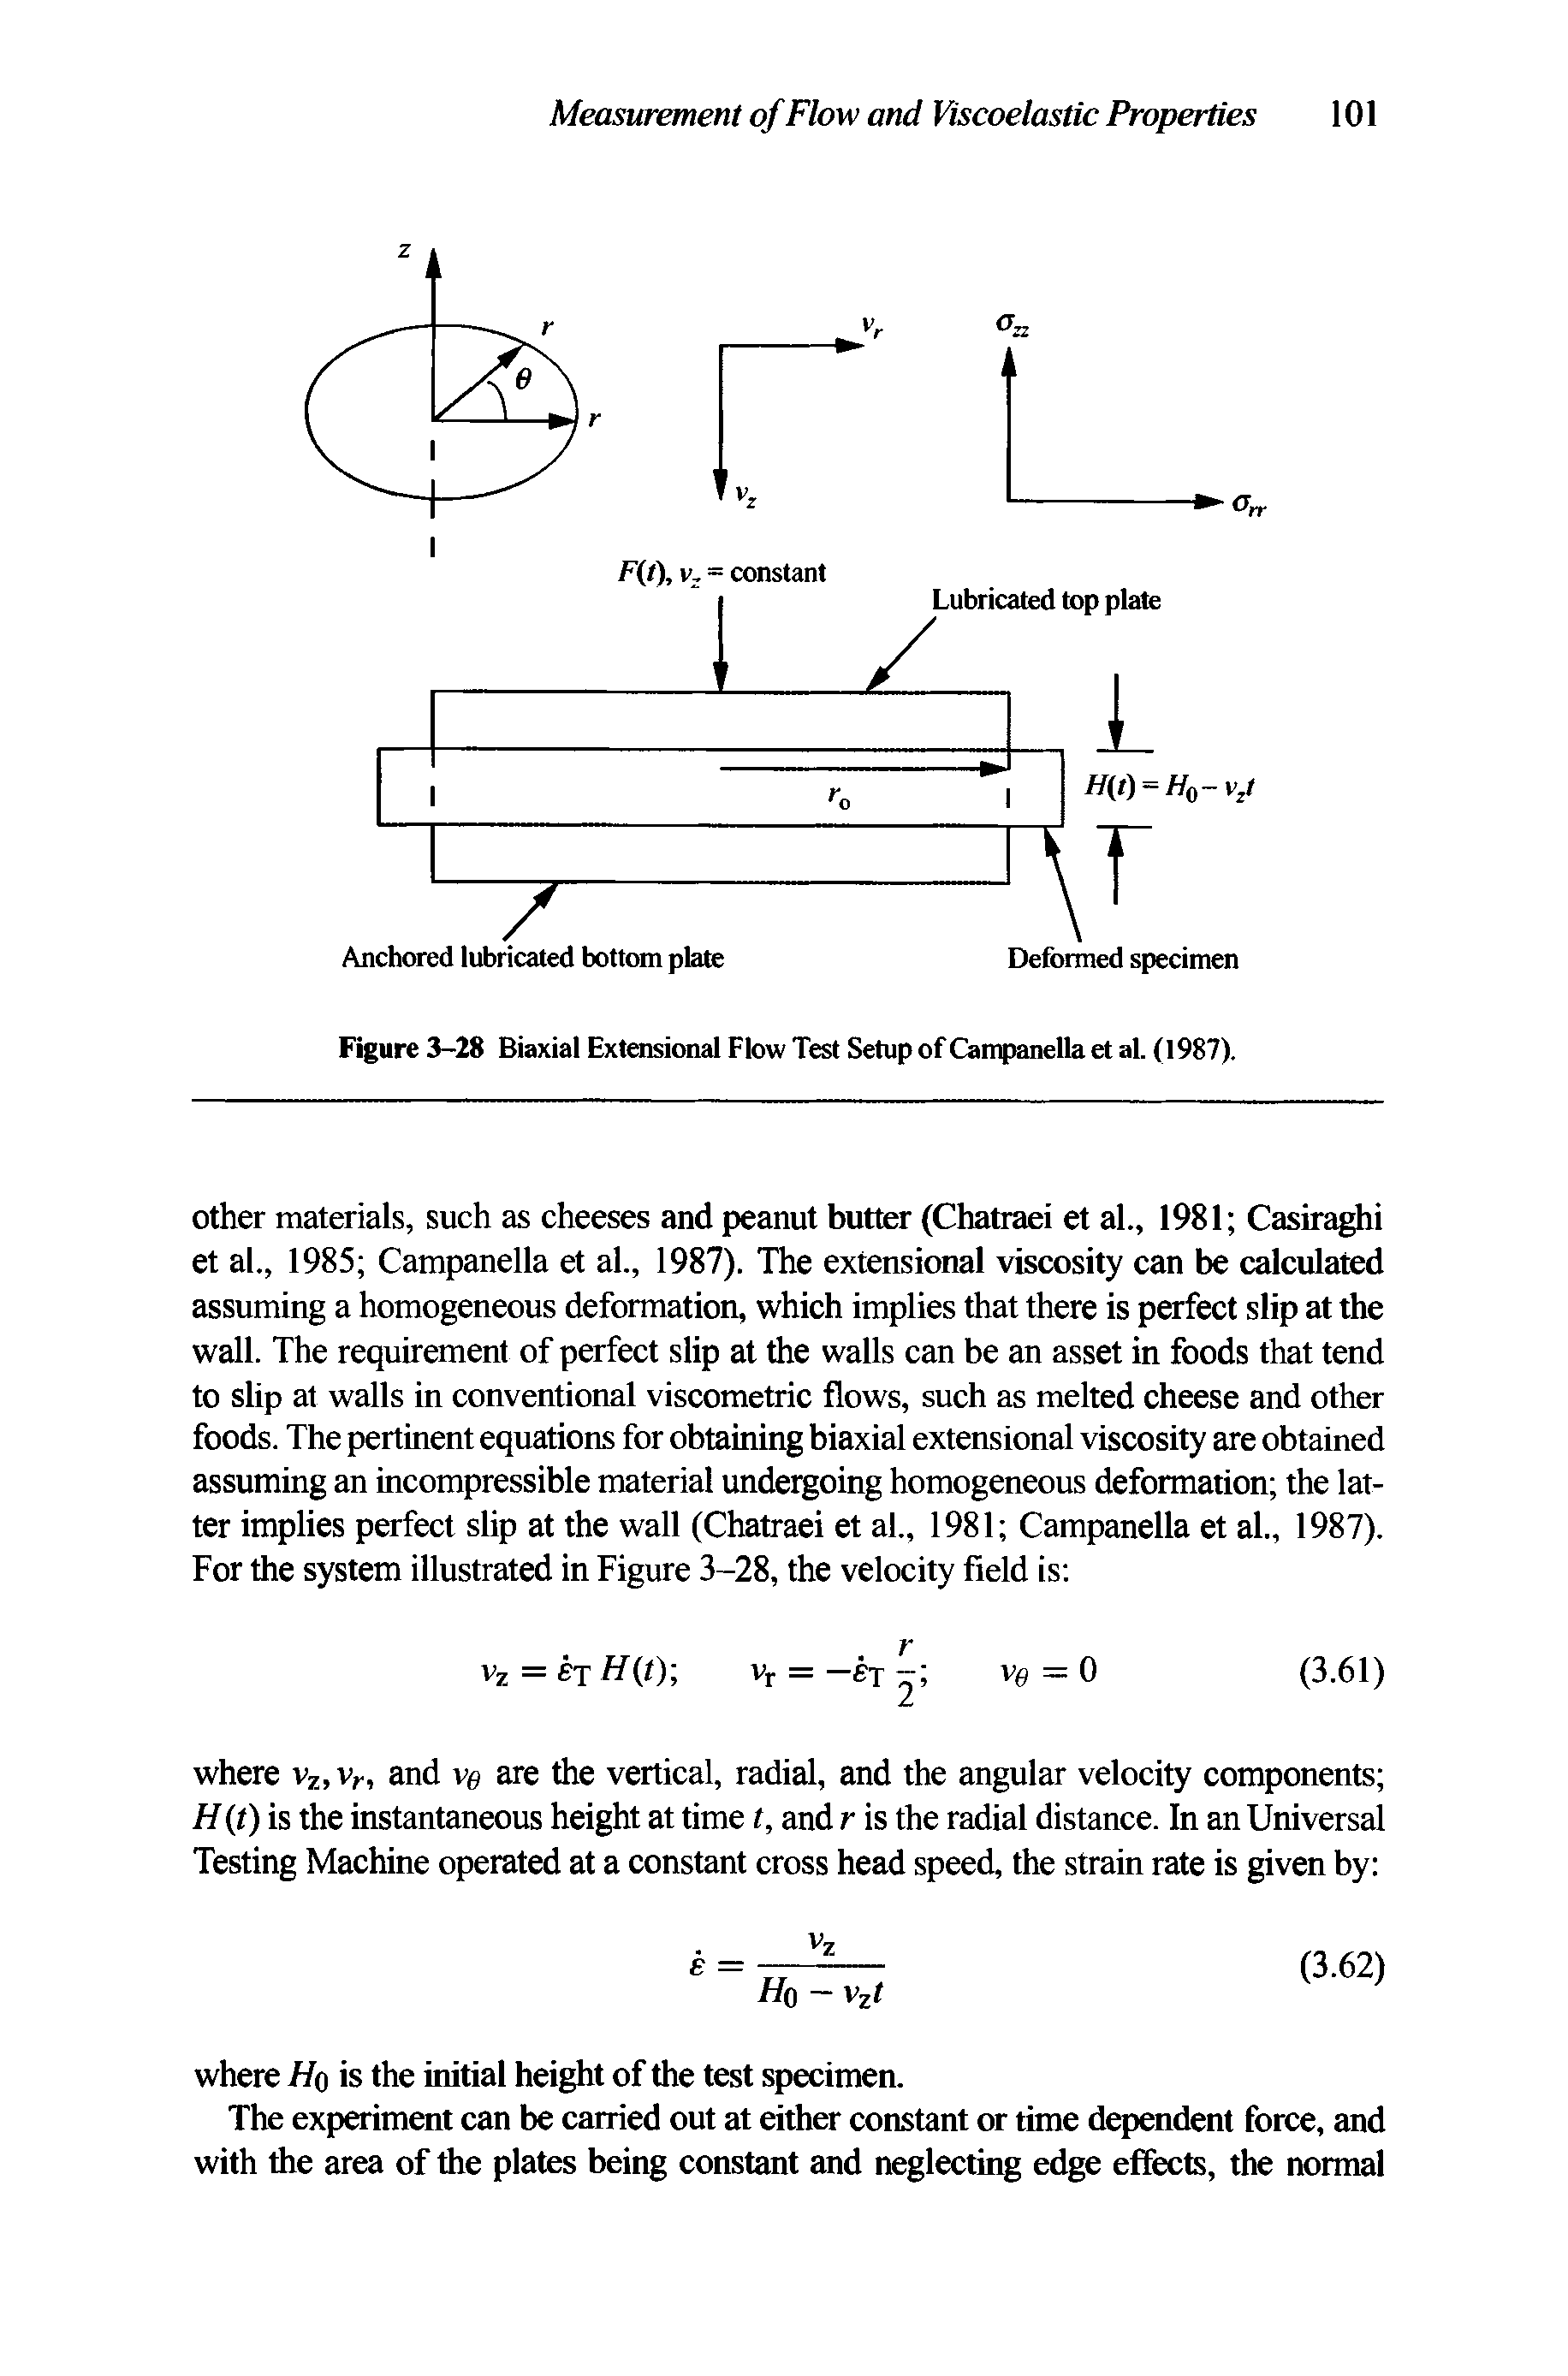 Figure 3-28 Biaxial Extensional Flow Test Setup of Campanella et al. (1987).